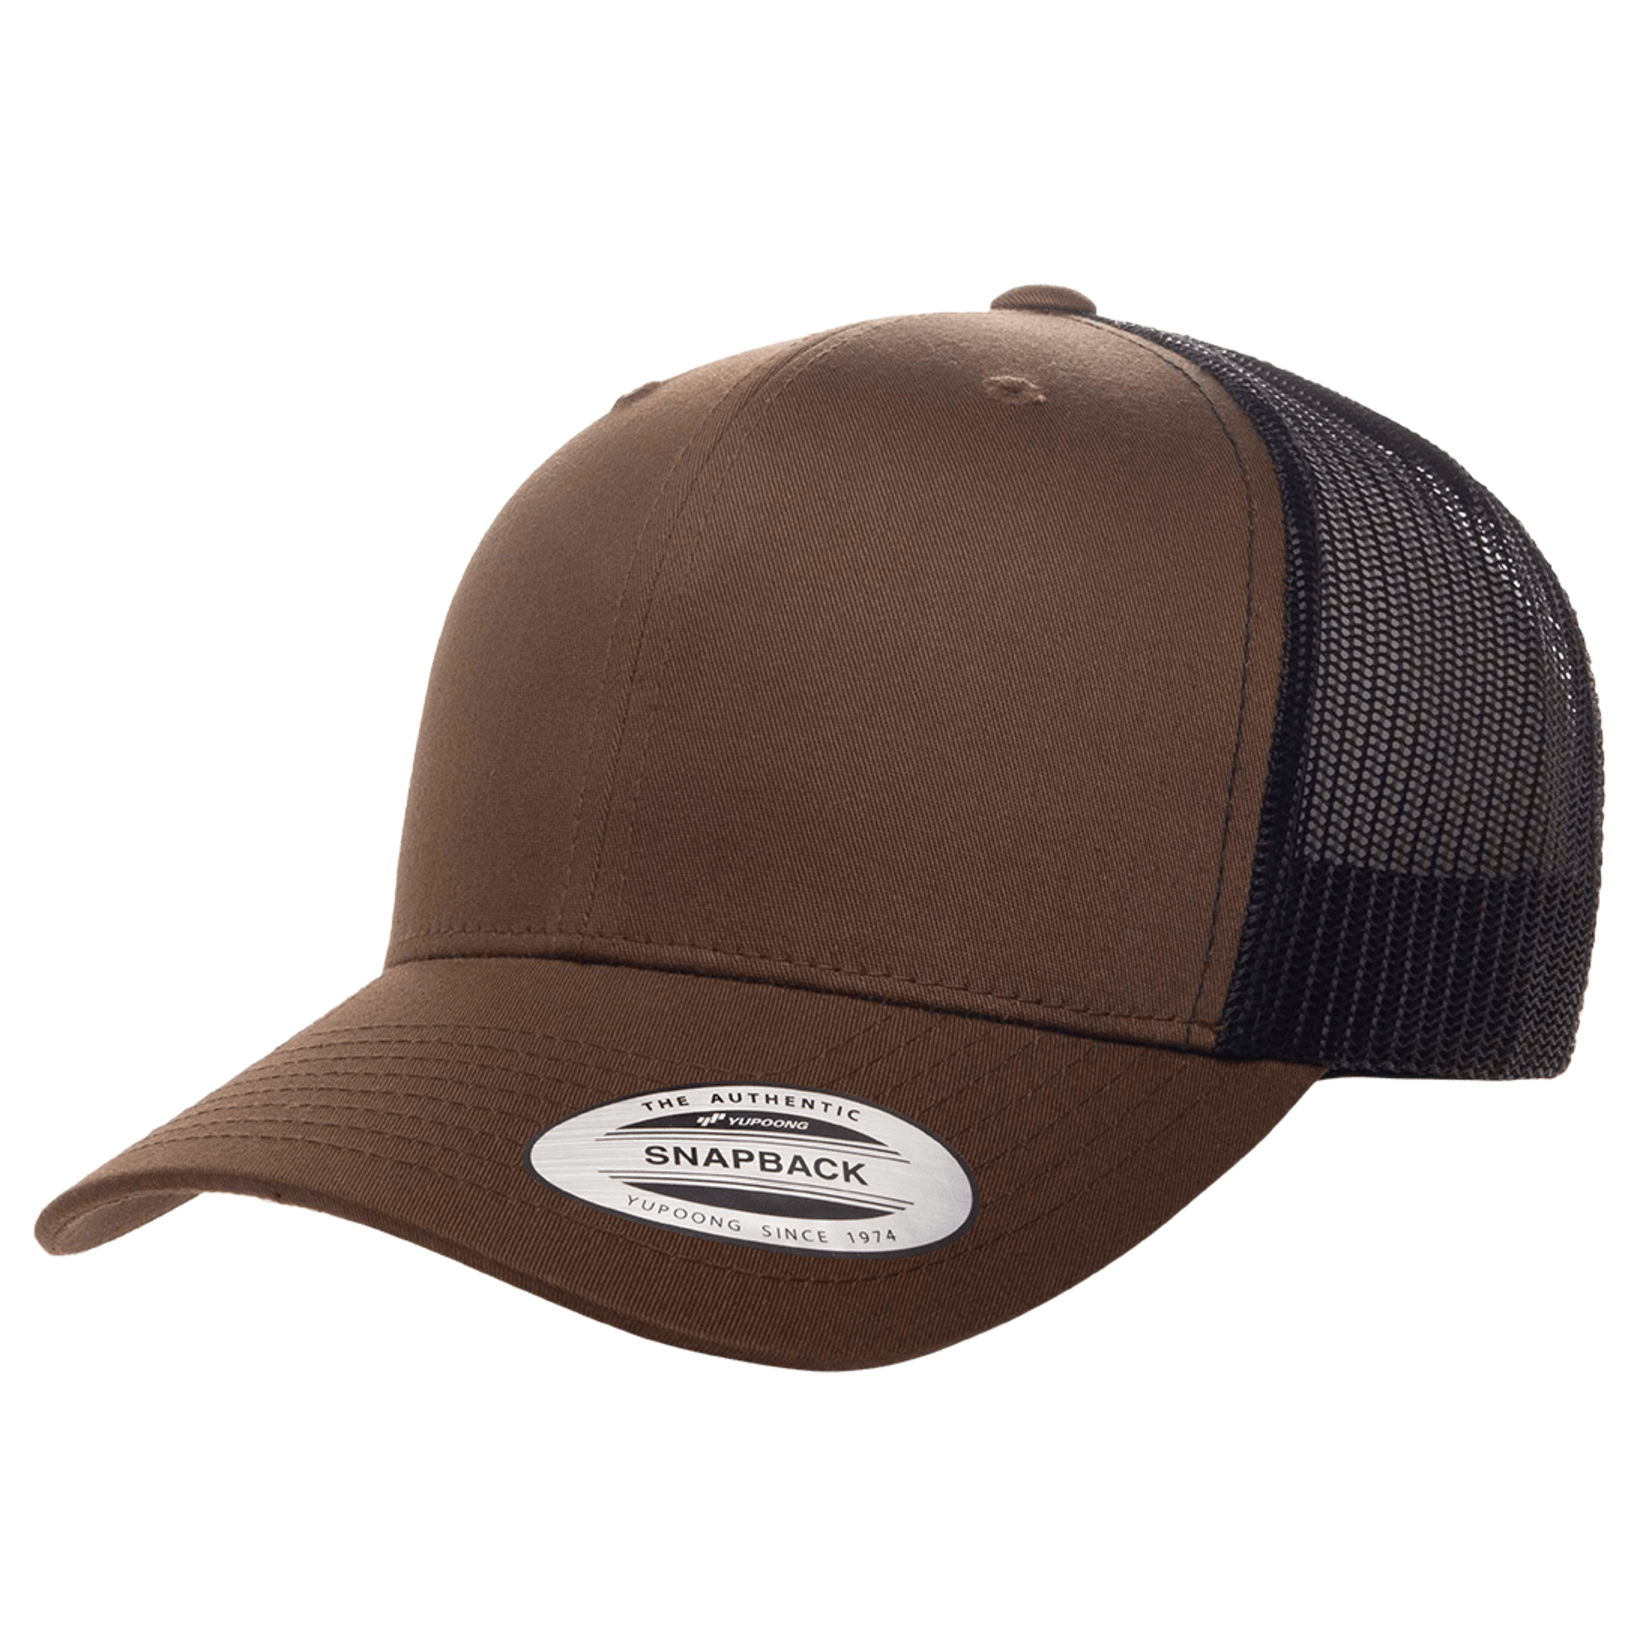 Trucker Hat Snapback Hat Baseball Cap for Men Women Adjustable Fit Casual  Wear